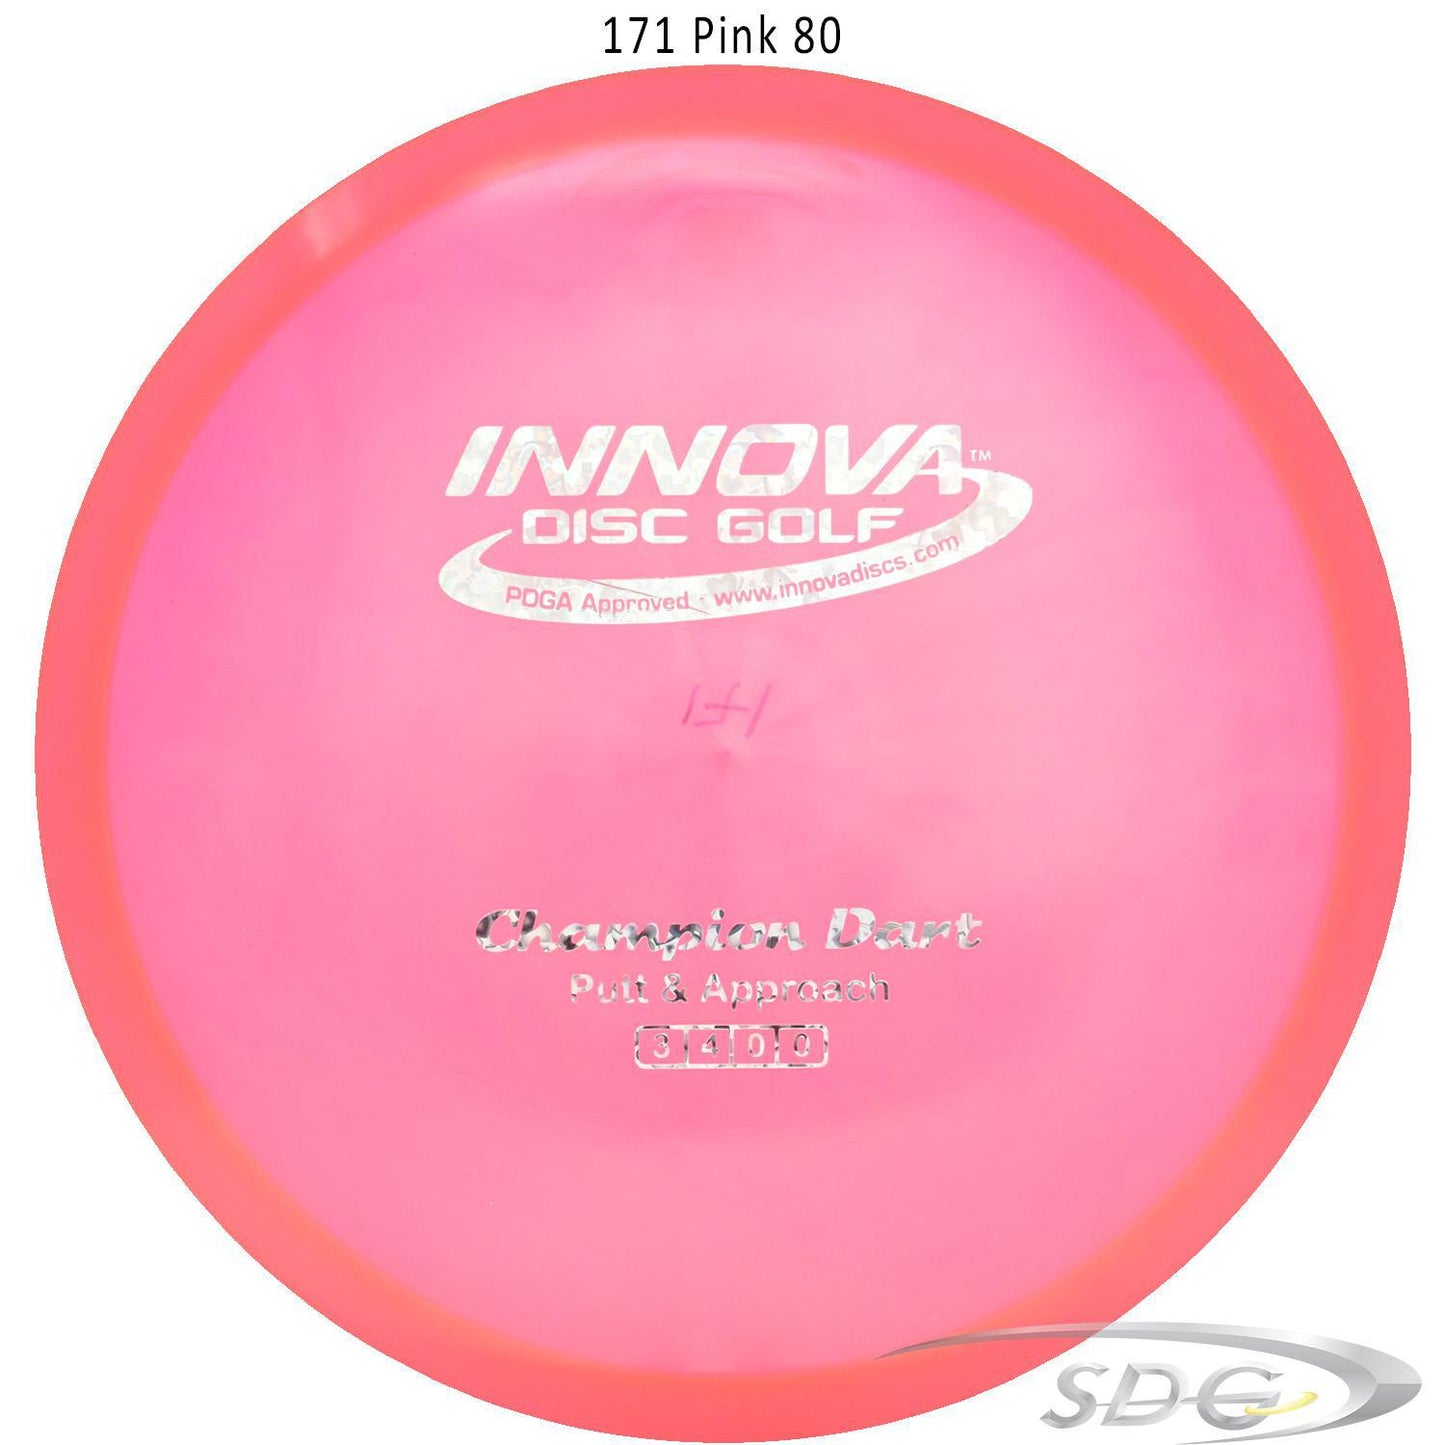 innova-champion-dart-disc-golf-putter 171 Pink 80 